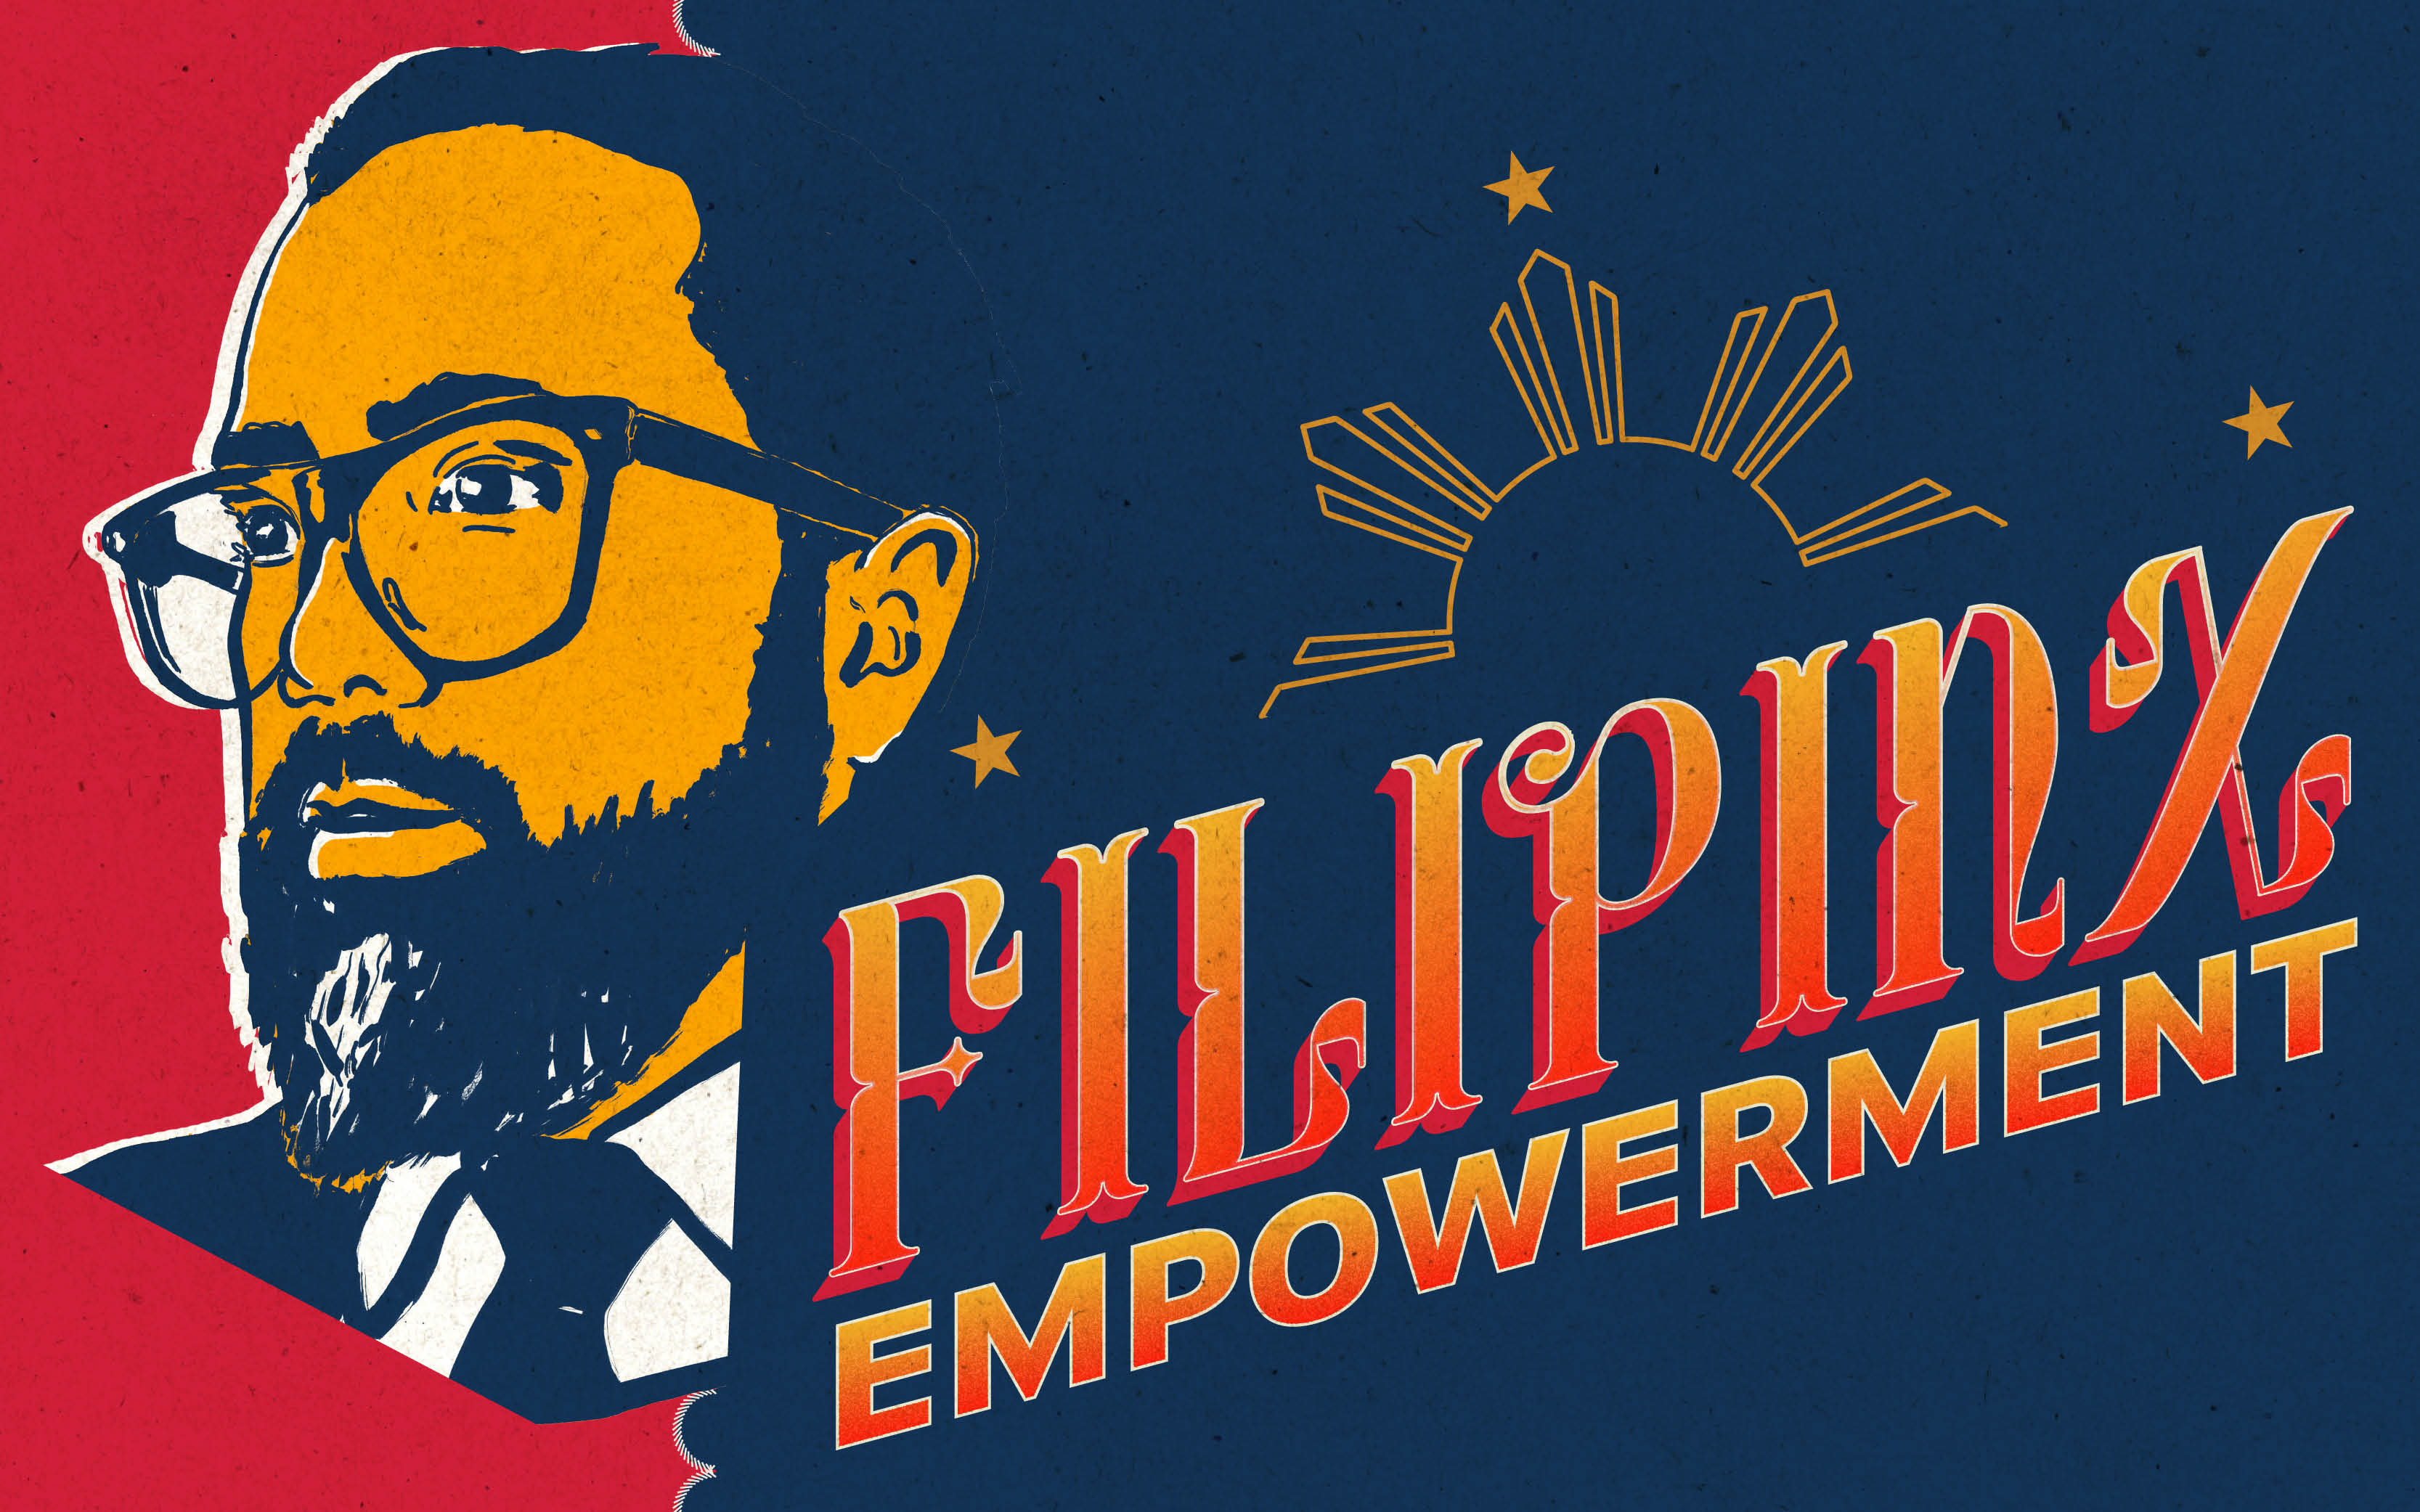 Filipinx Empowerment